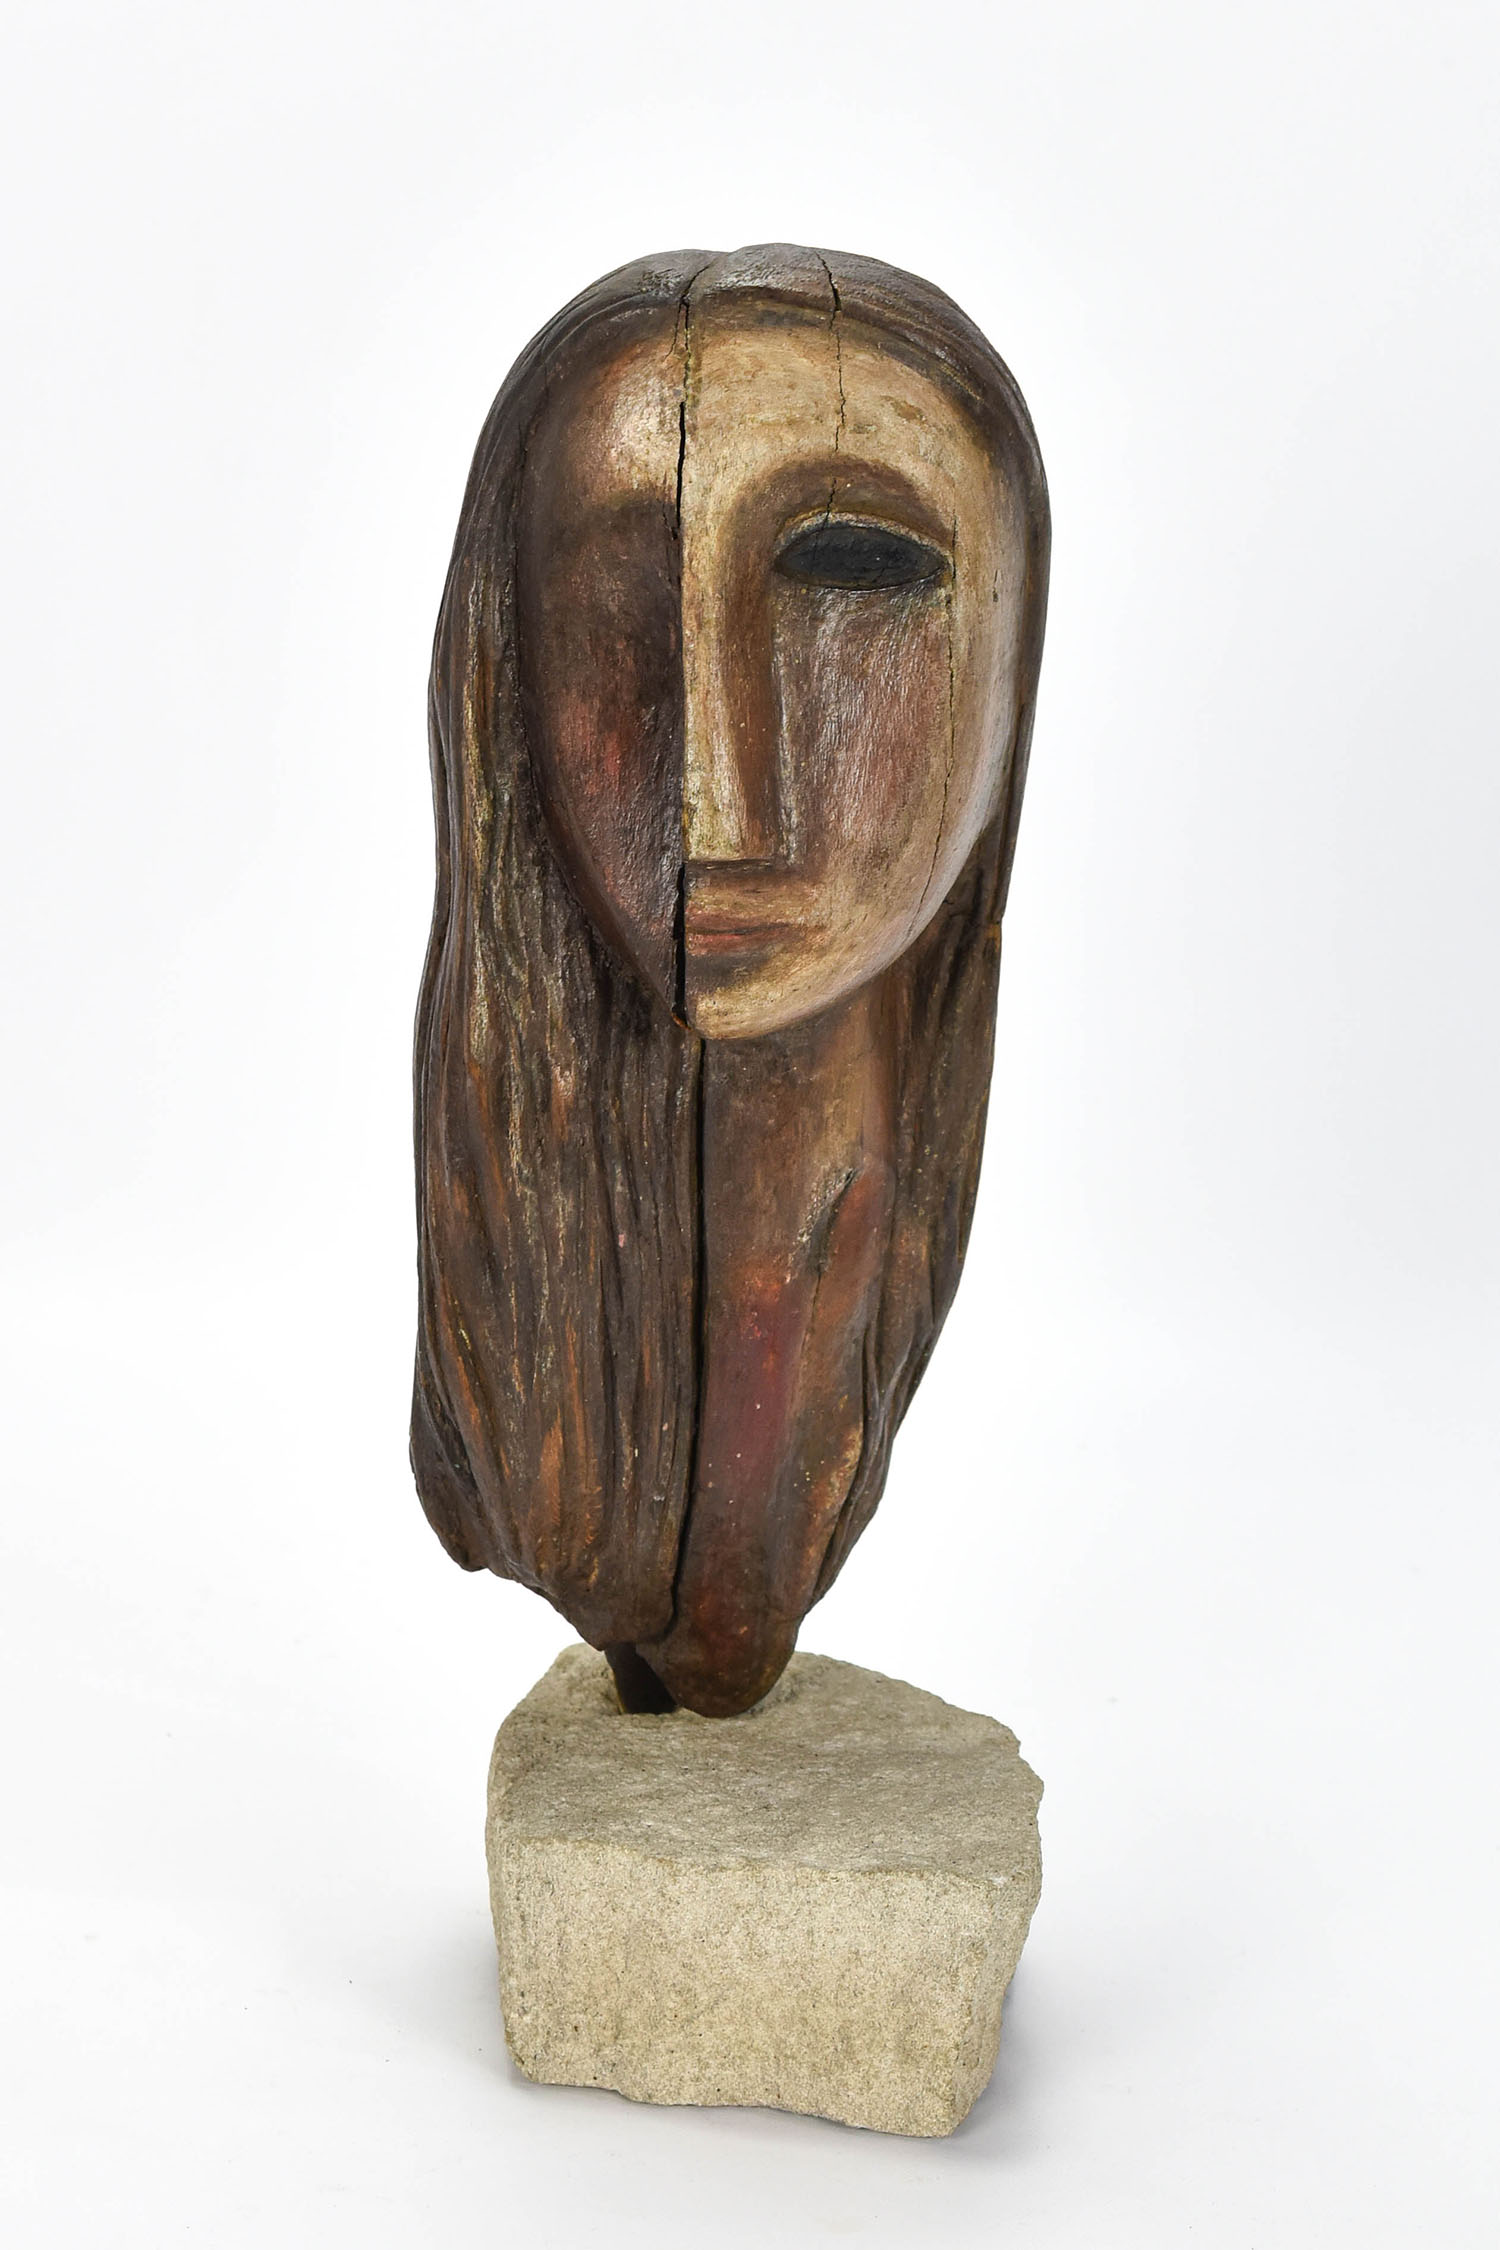 Robert E. Kuhn Cubist Wood Sculpture Woman's Head